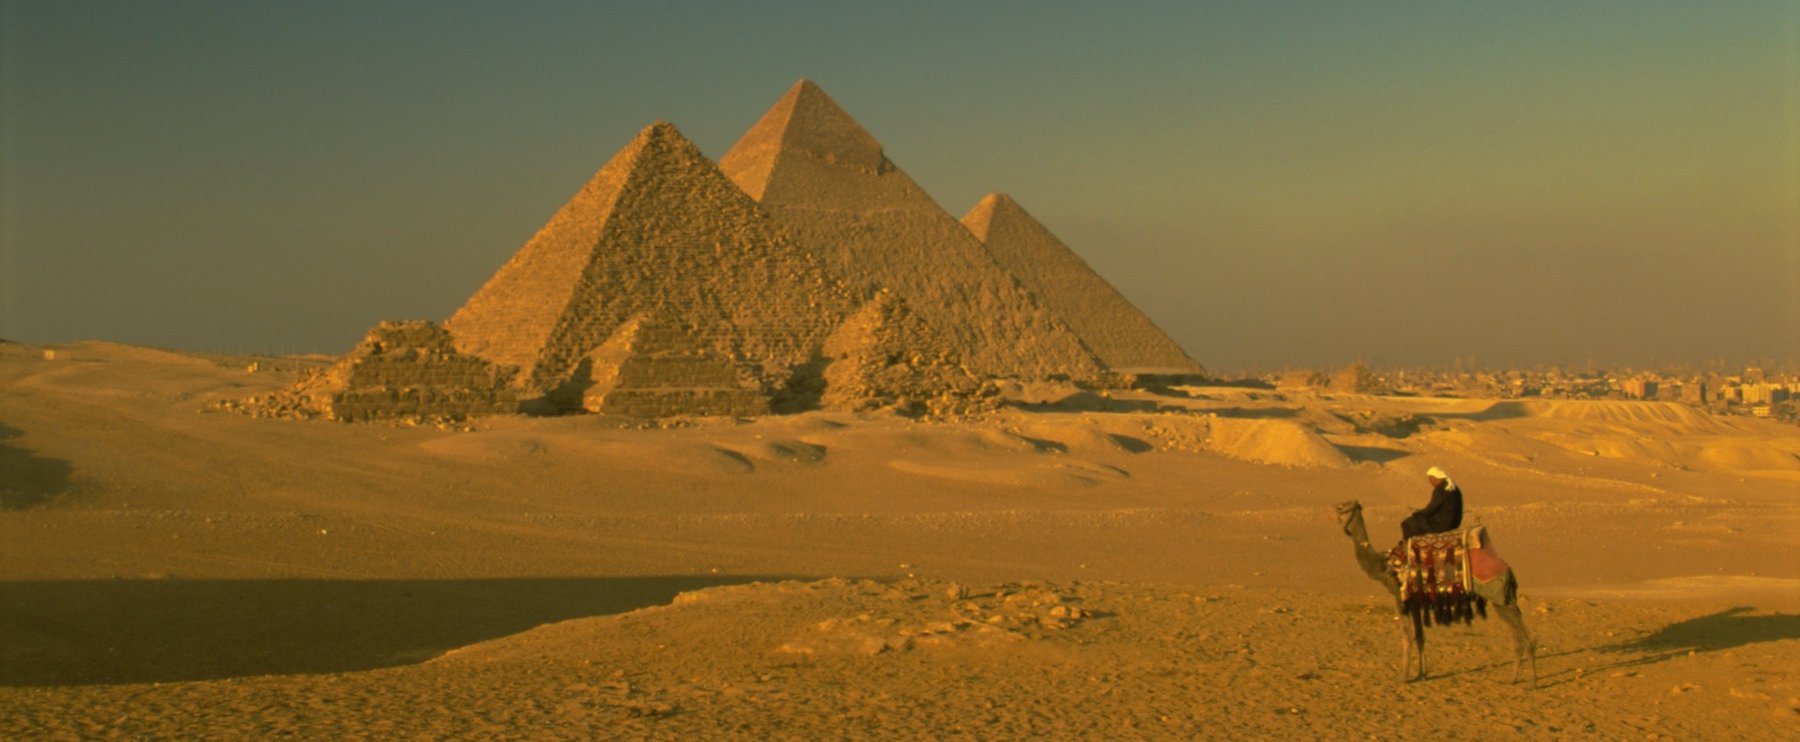 Egyiptom alatt a mélyben rémisztően óriási dolgot találtak, évezredek óta nem nyúlt hozzá senki